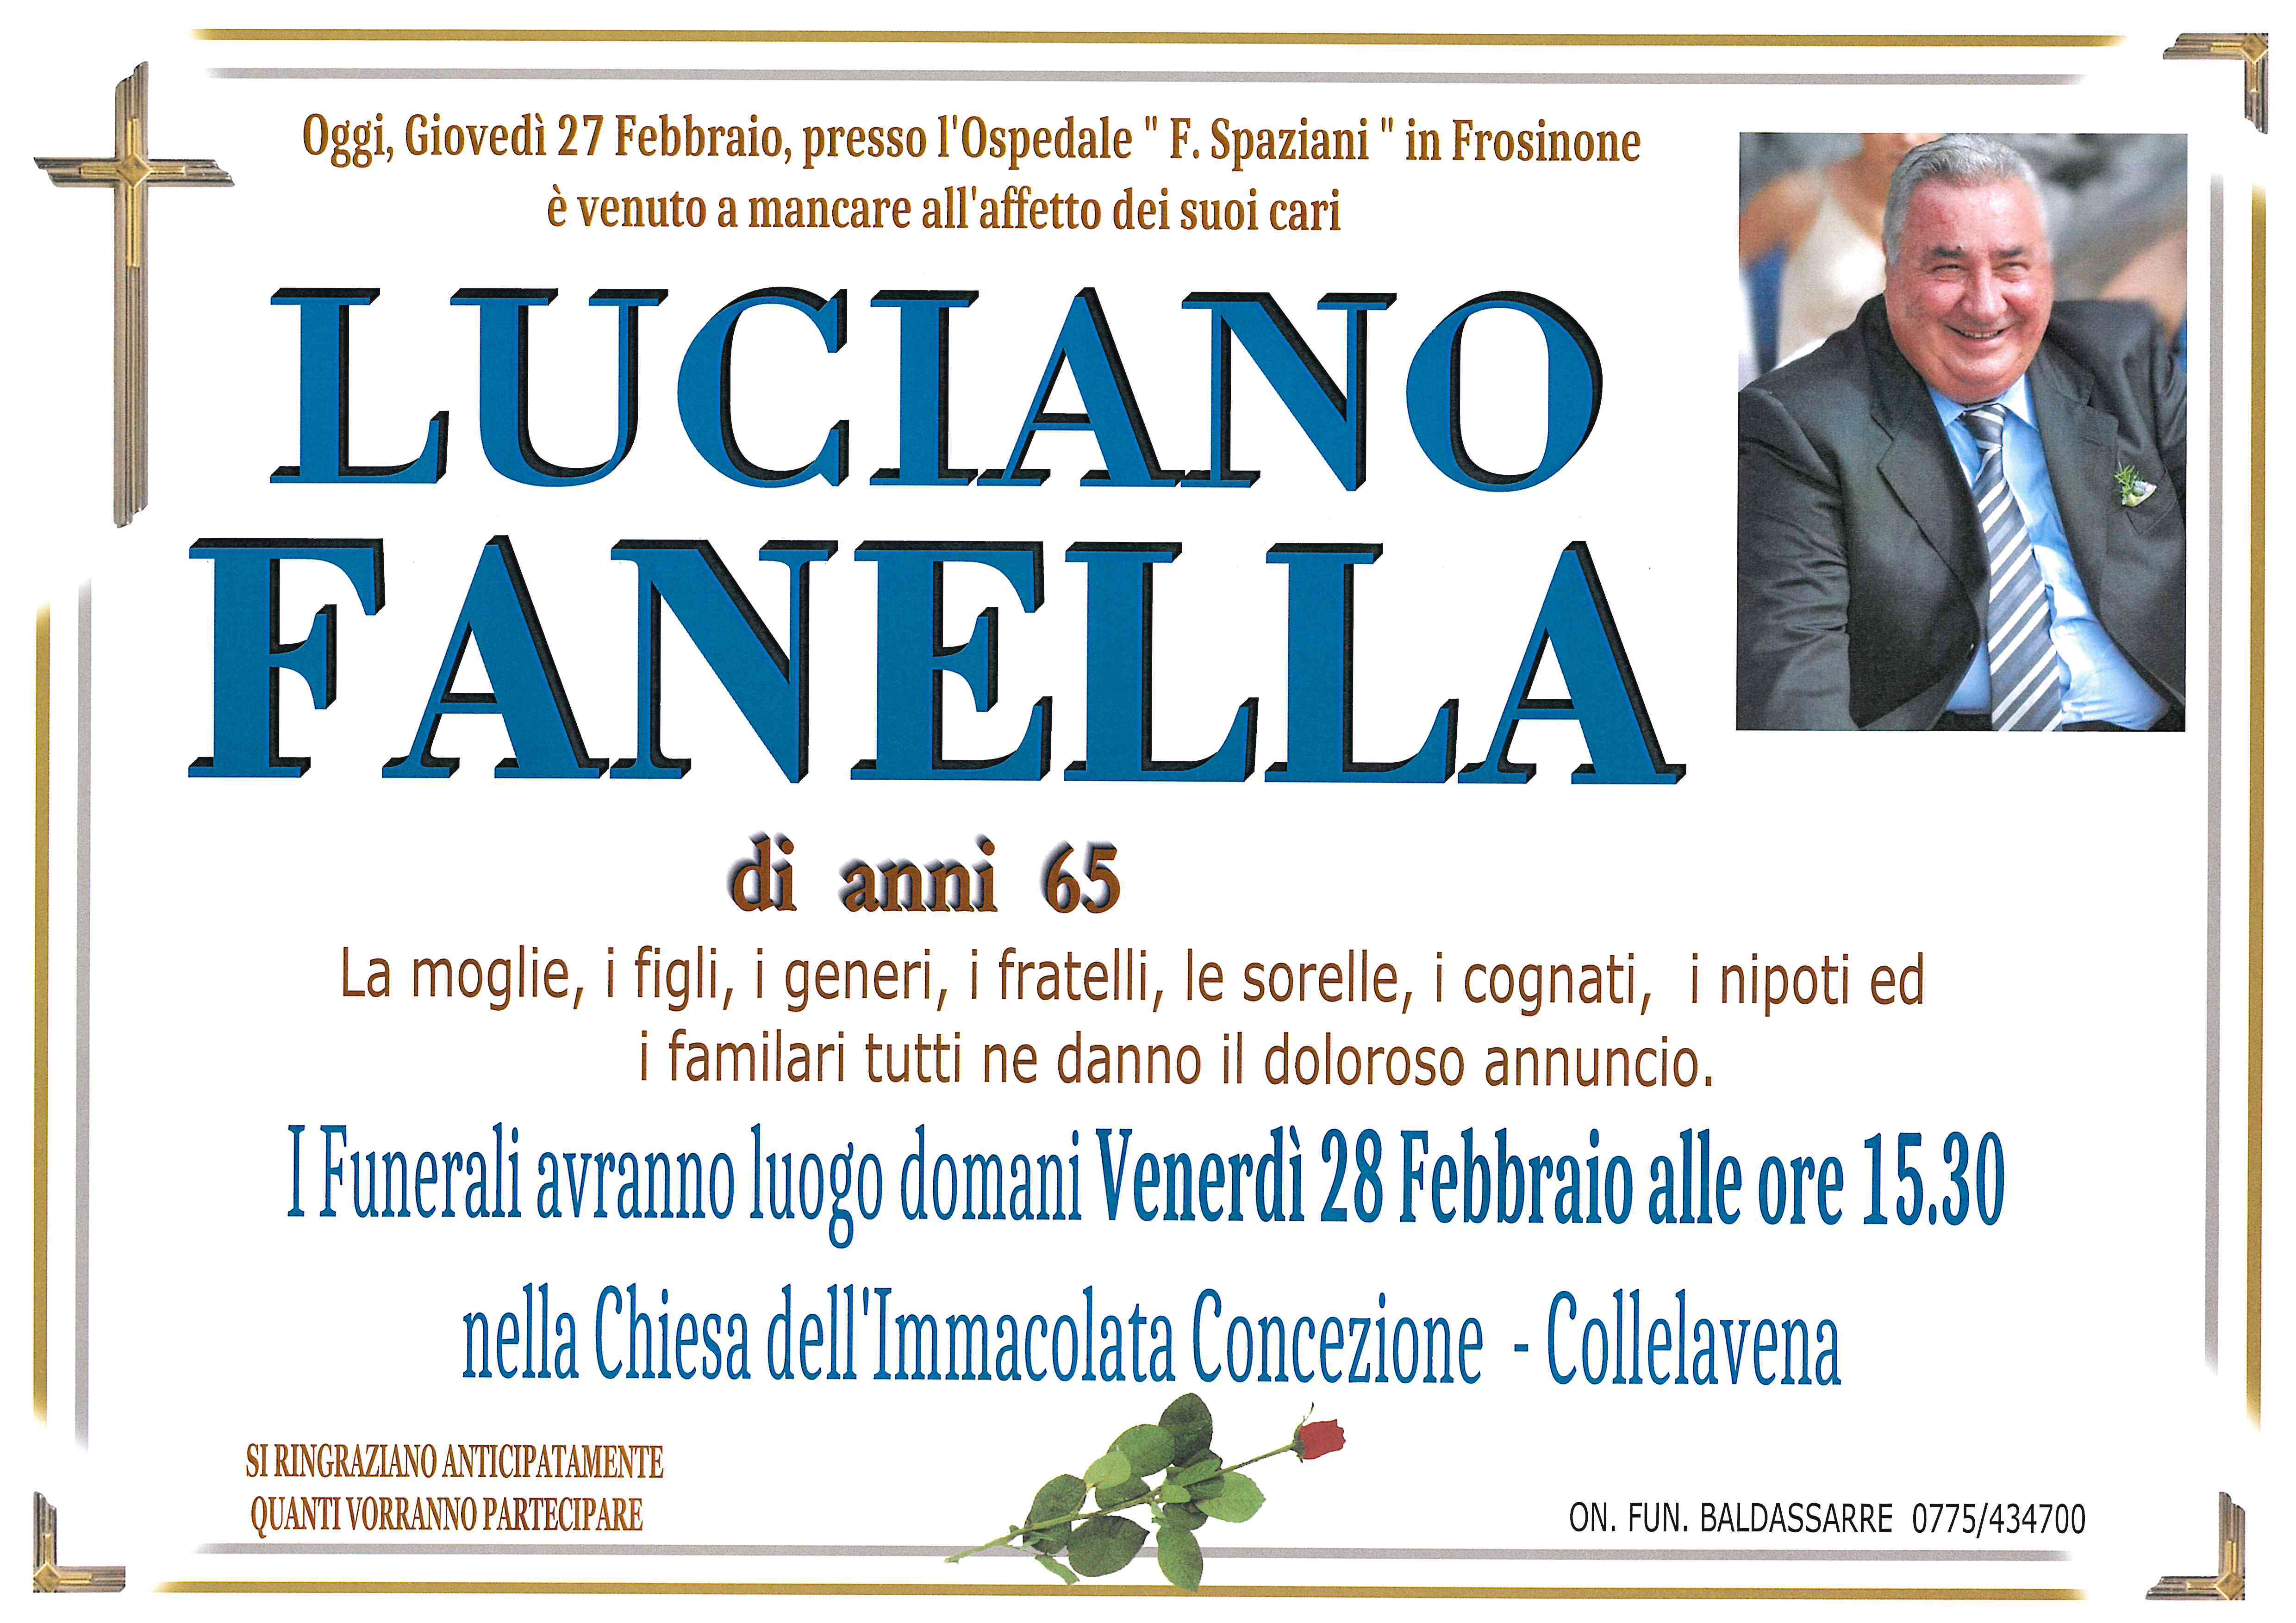 Luciano Fanella